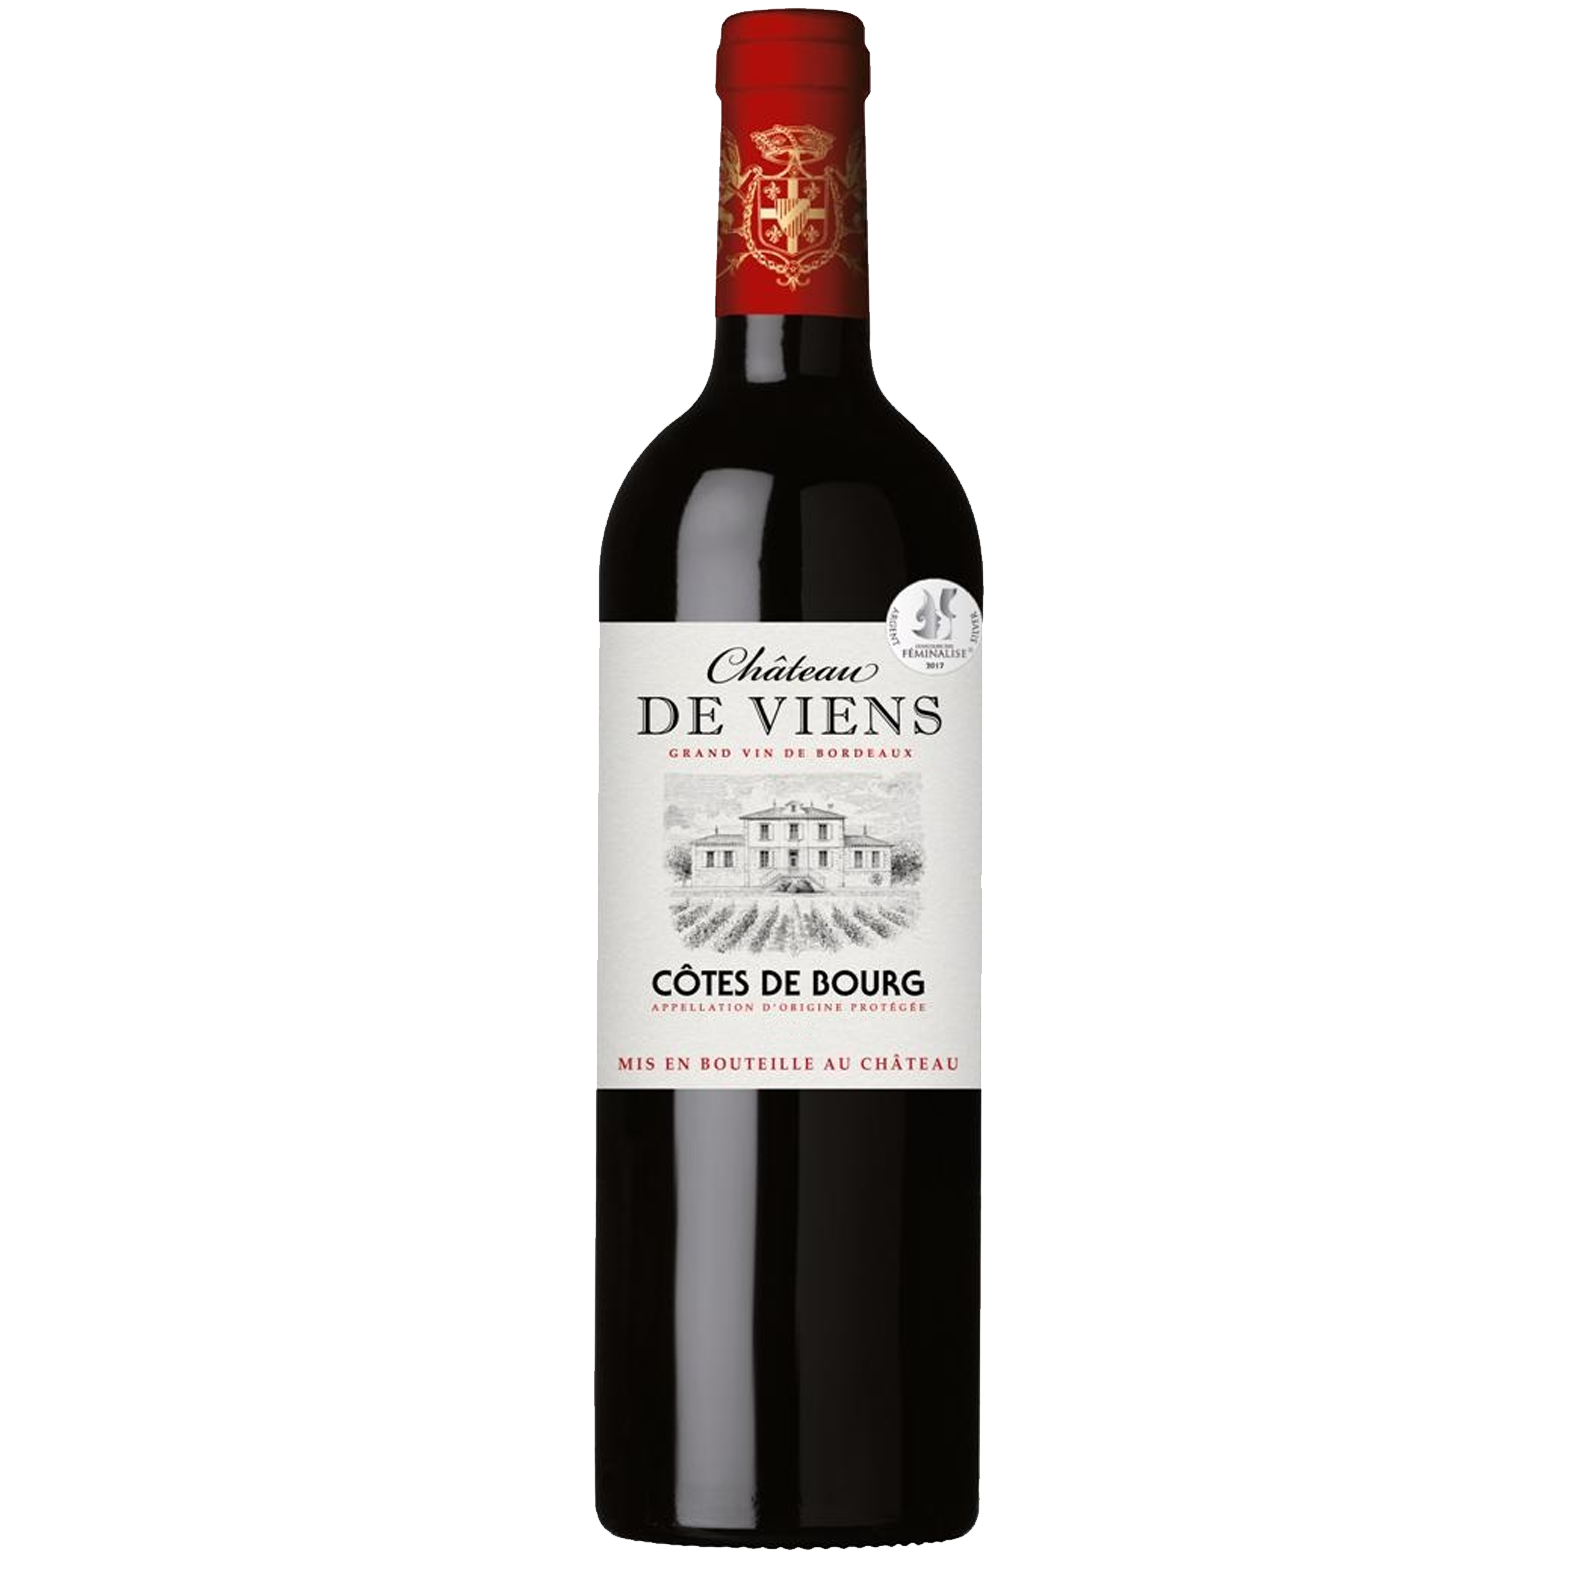 Vente Livraison Vin Bordeaux "Côtes-de-Bourg" Château DE VIENS